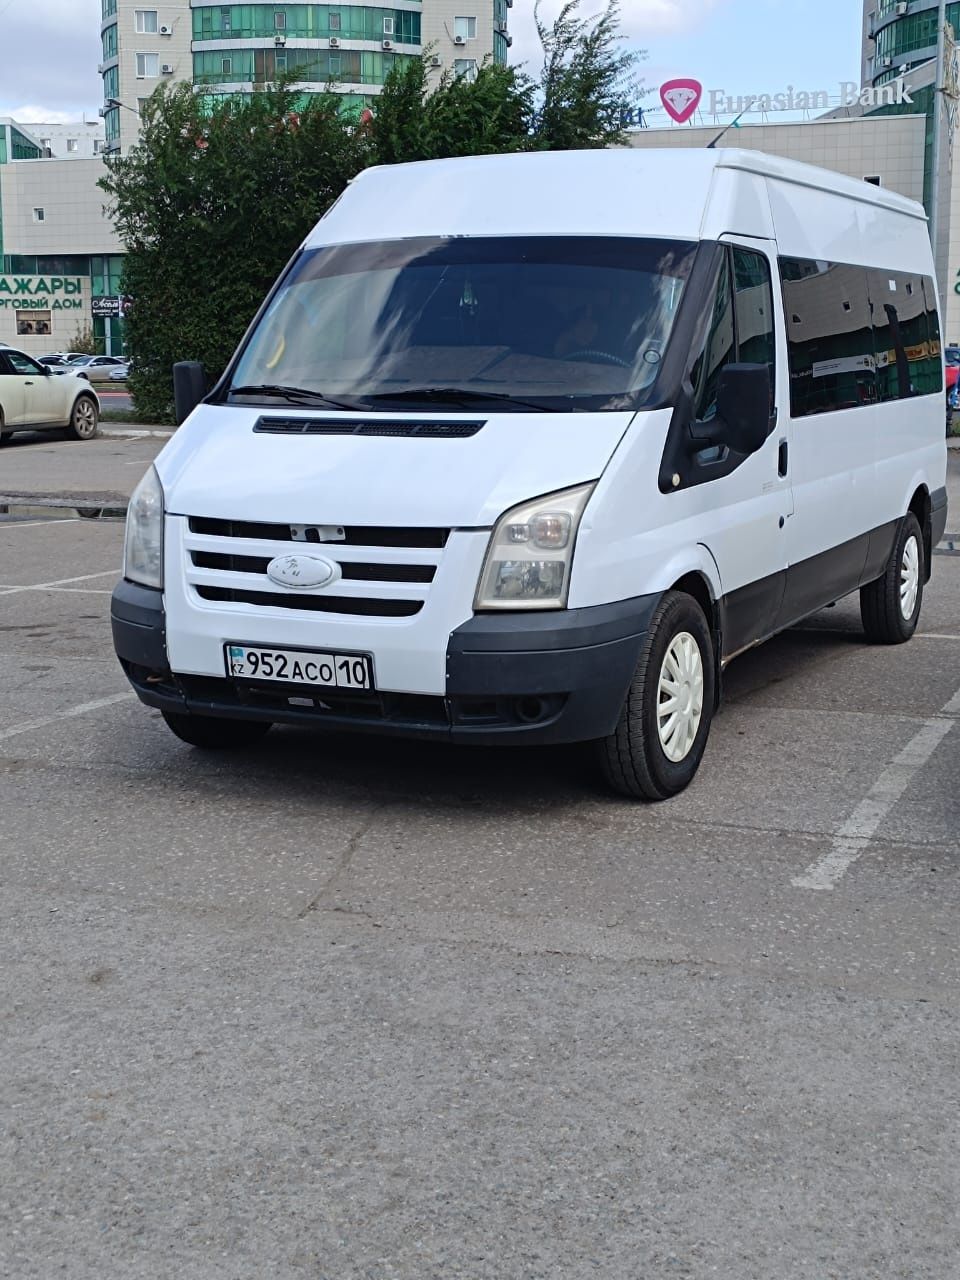 Автобусы в Казахстане - продажа новых и БУ пассажирских автобусов новых и  БУ на OLX.kz